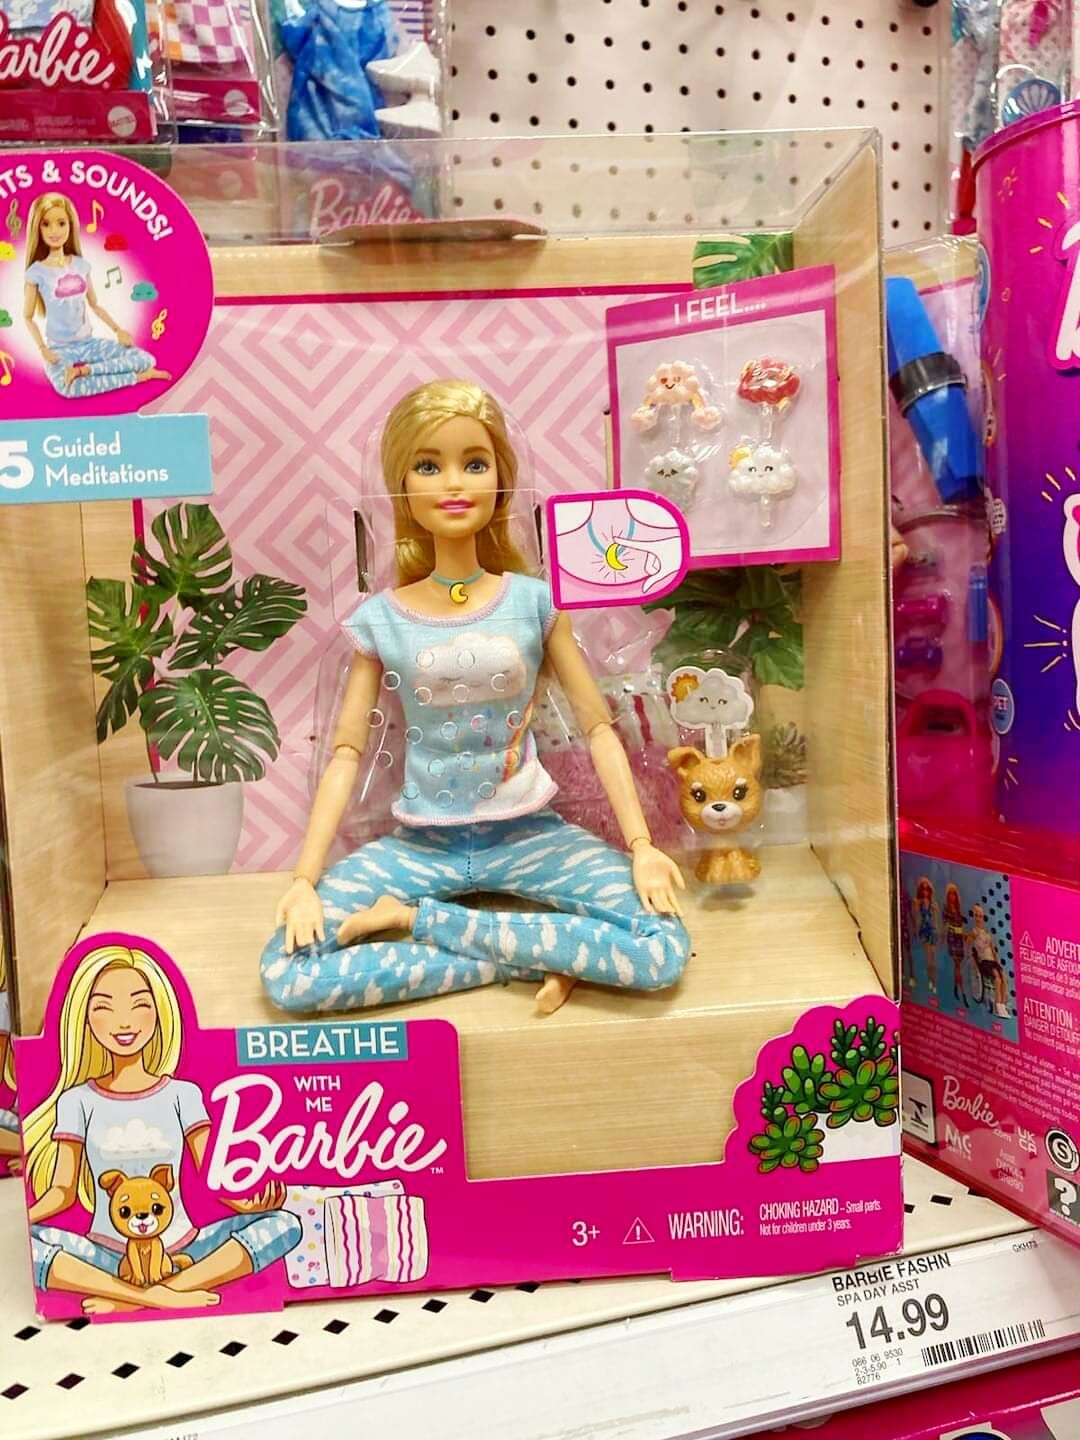 A boneca Barbie praticante de ioga (Foto: divulgação)